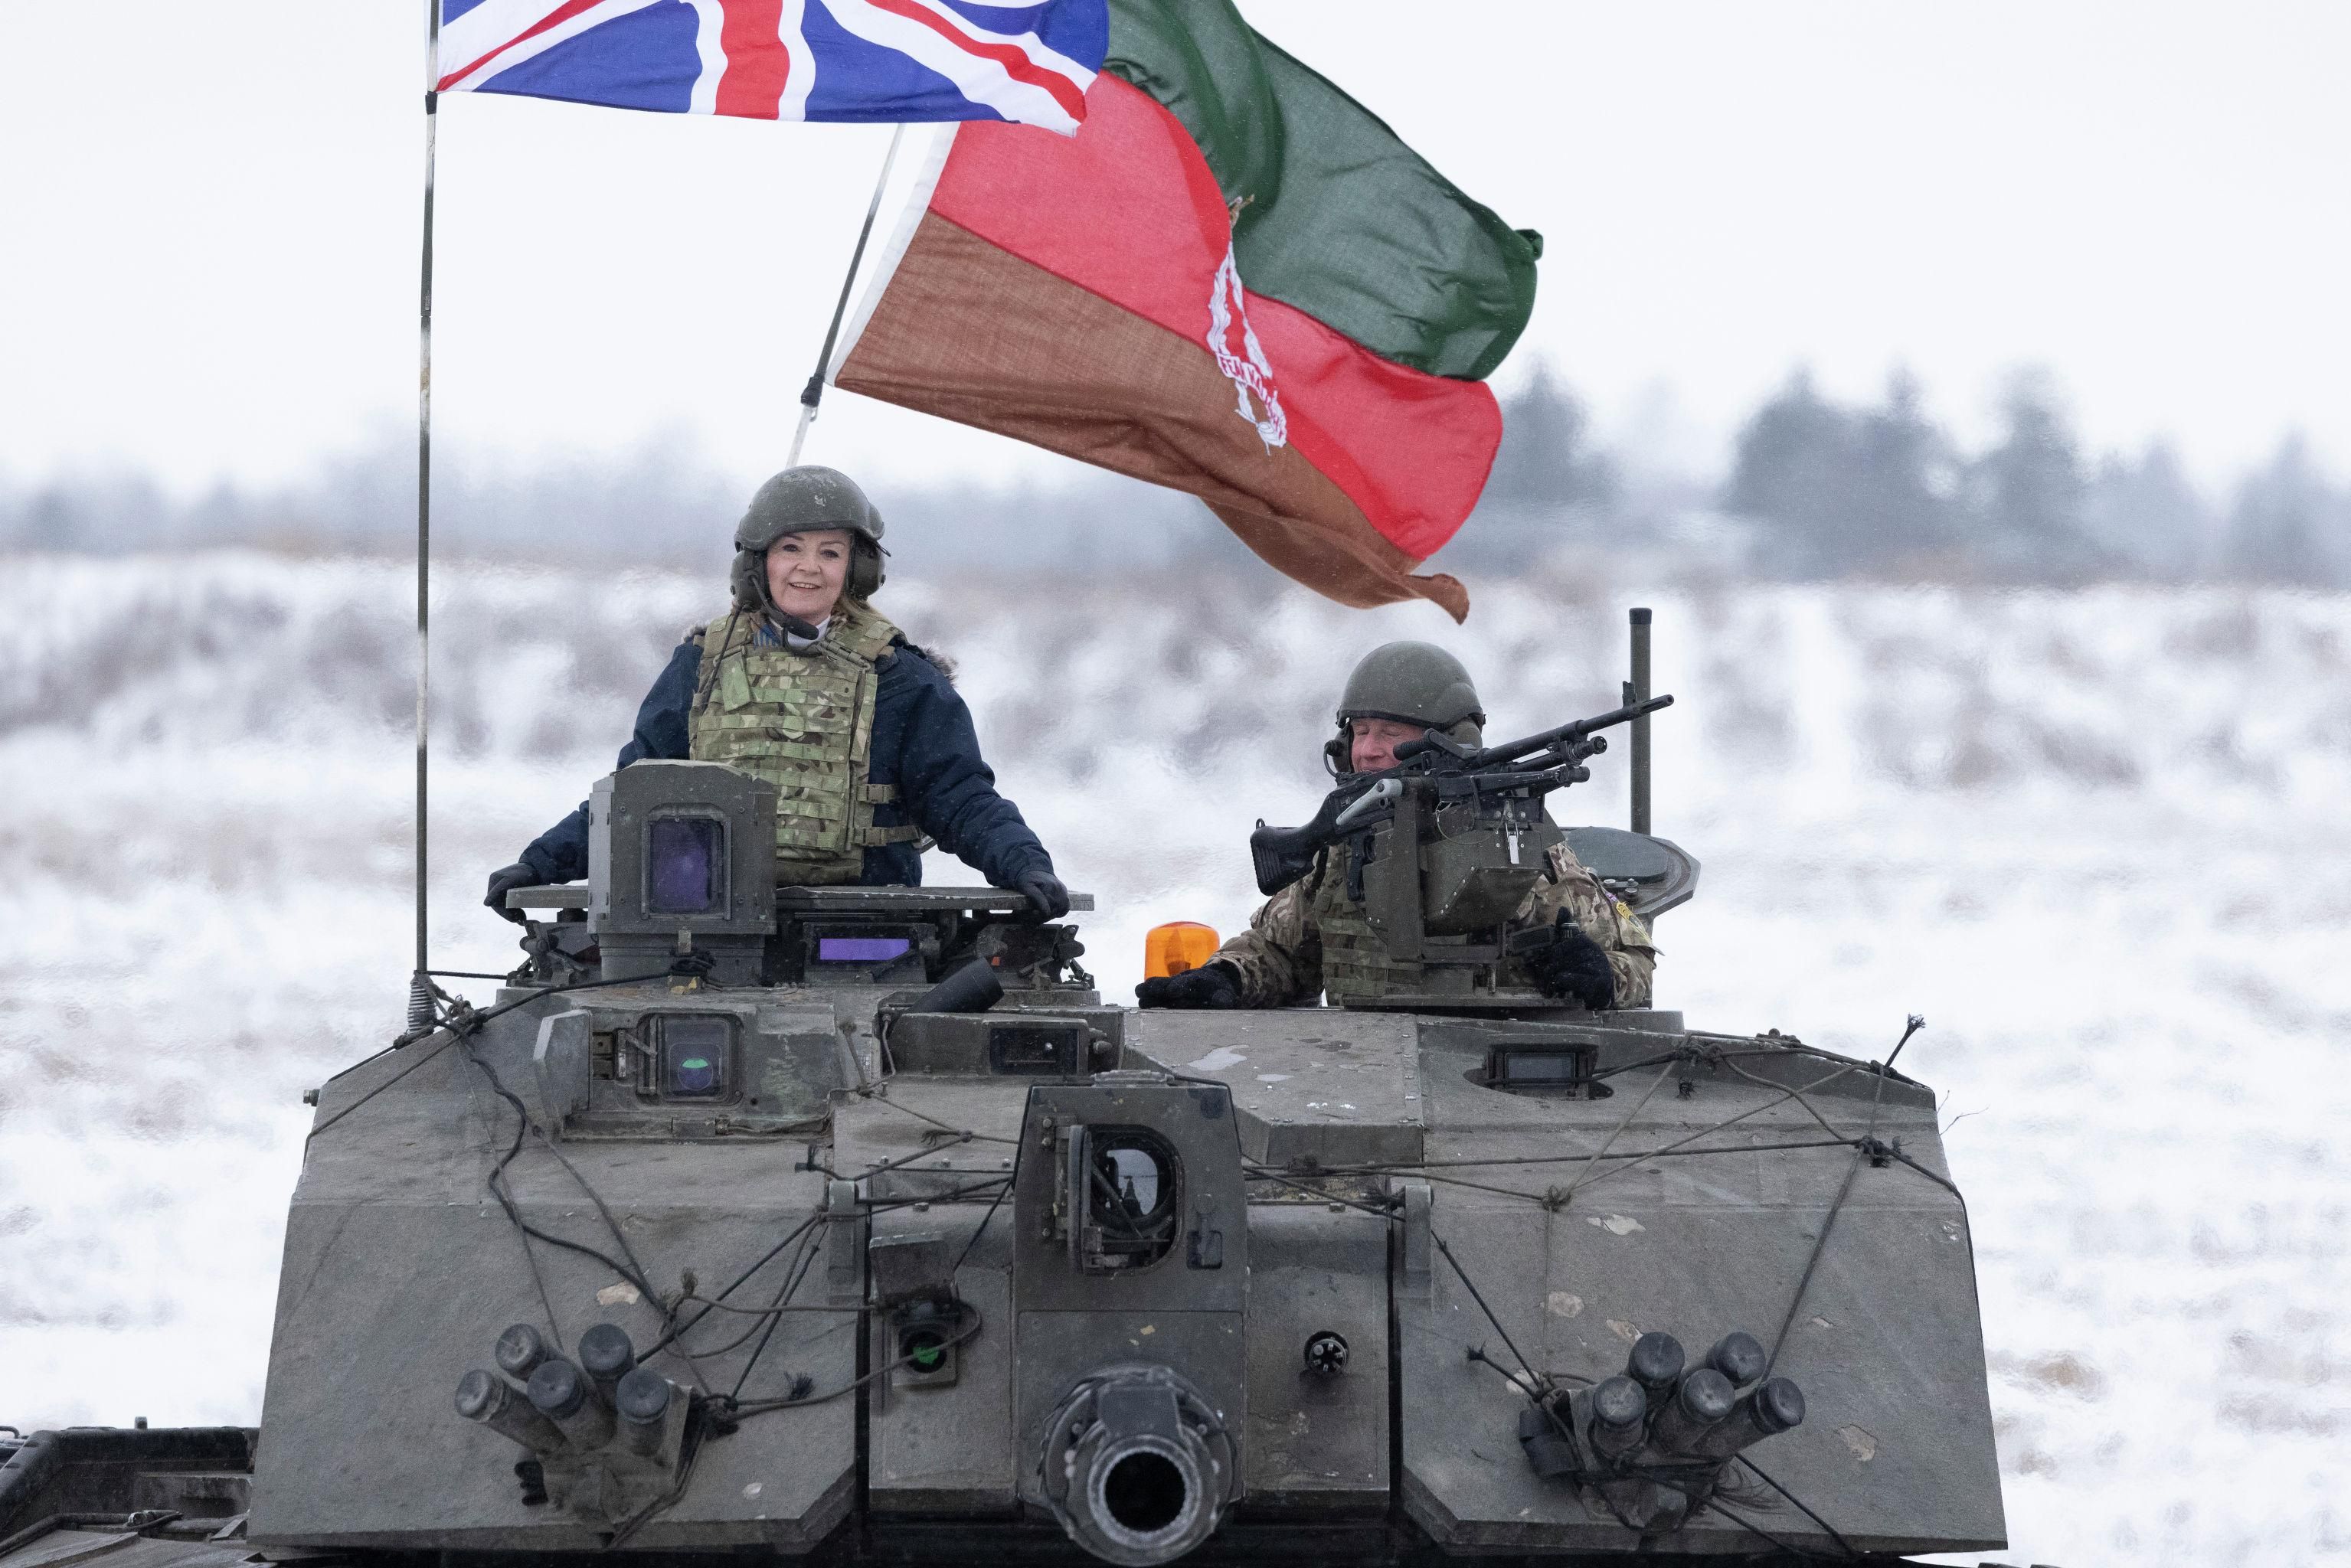 © ФОТО : SIMON DAWSON / NO10 DOWNING STREET Министр иностранных дел Великобритании Лиз Трасс на танке на полигоне в Тапа